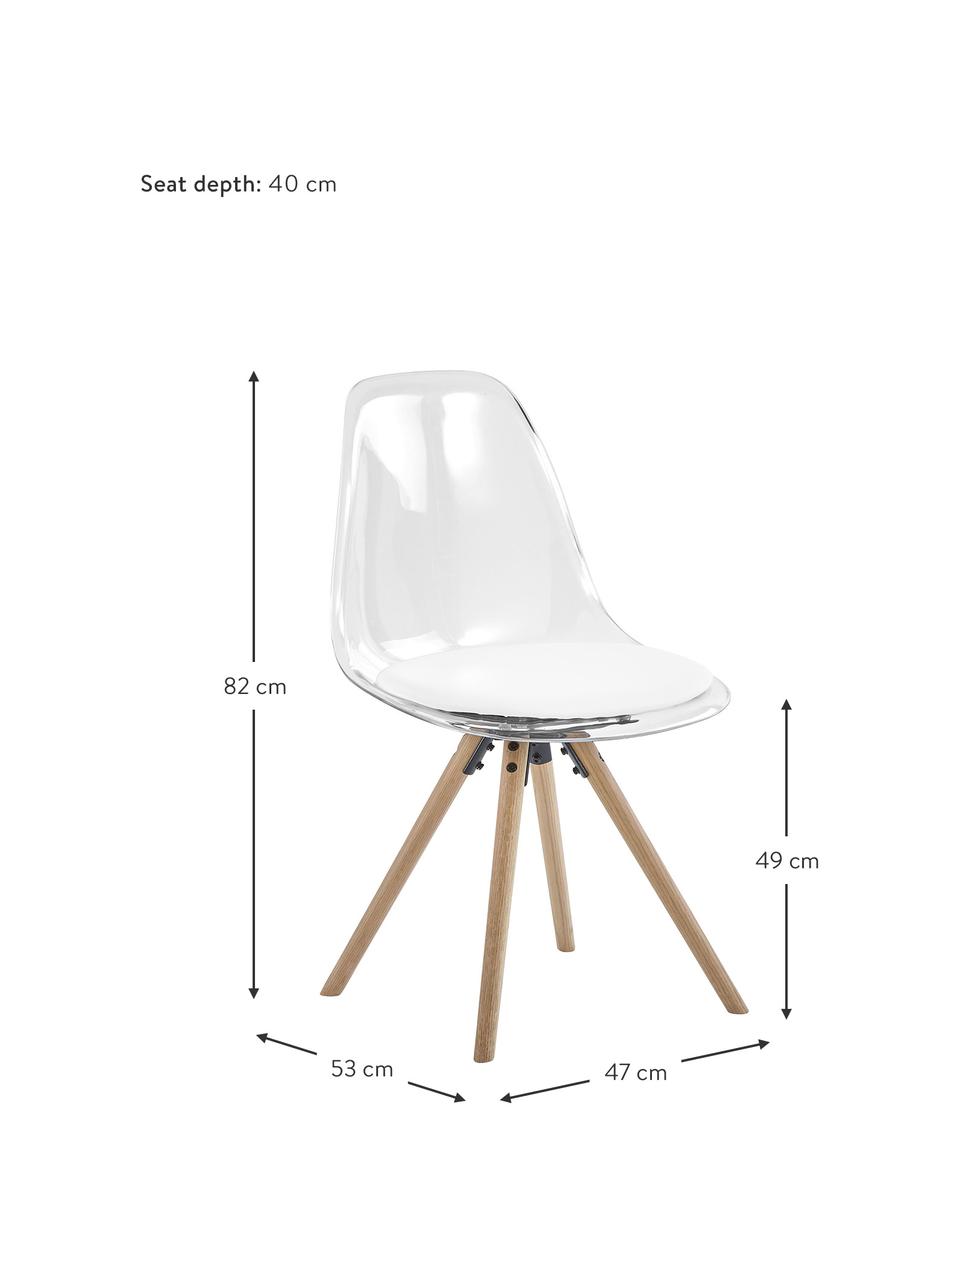 Kunststoff-Stühle Henning, 2 Stück, Sitzschale: Kunststoff, Beine: Eichenholz, geölt, Weiß, Transparent, Eichenholz, B 47 x T 53 cm